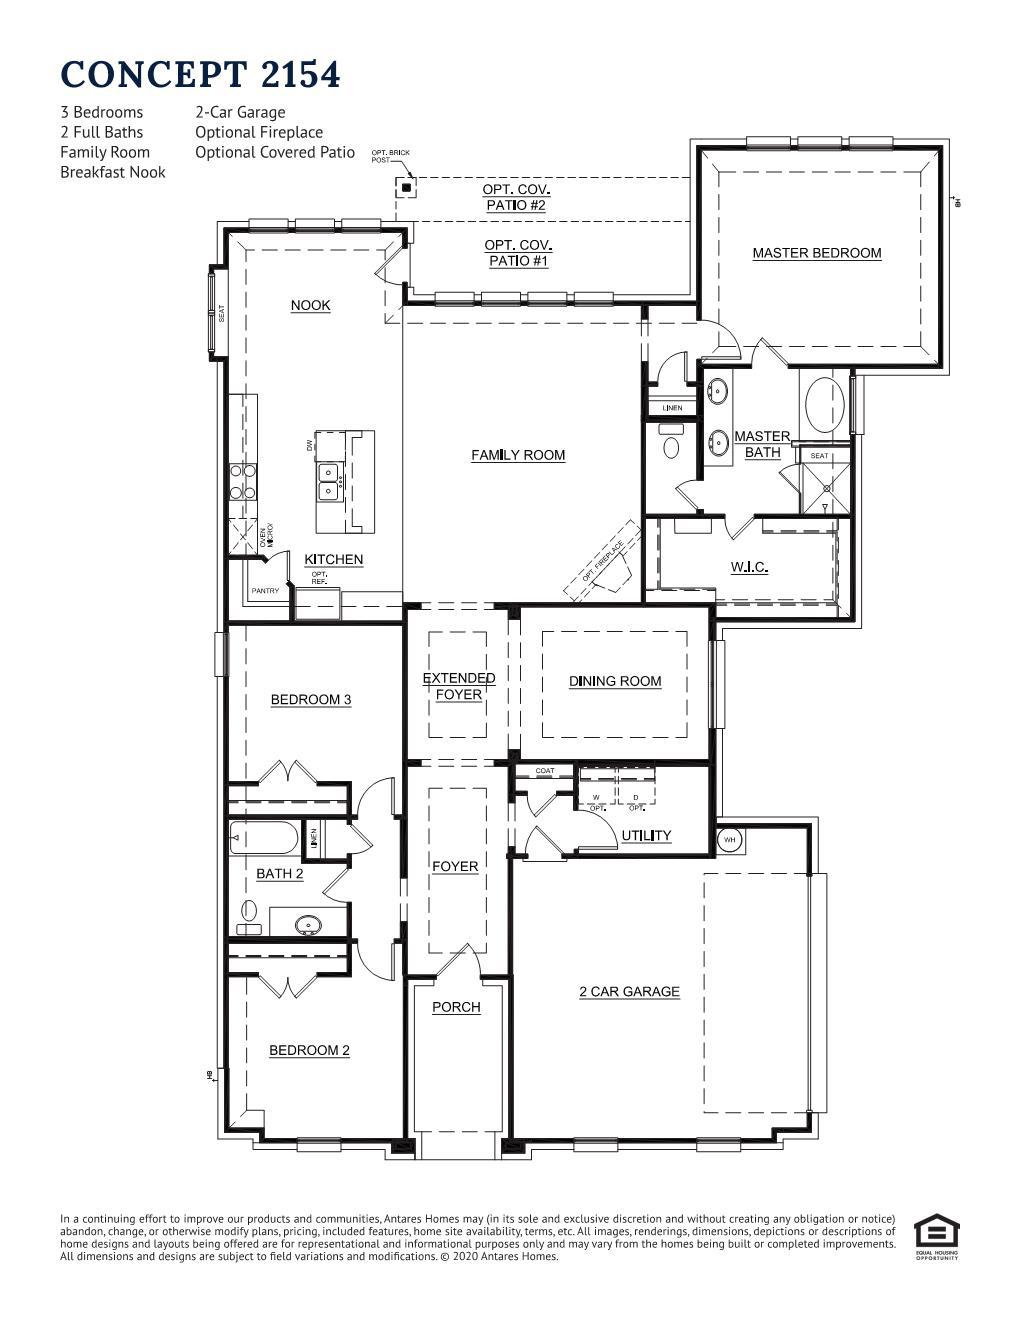 Concept 2154 New Home Floor Plan